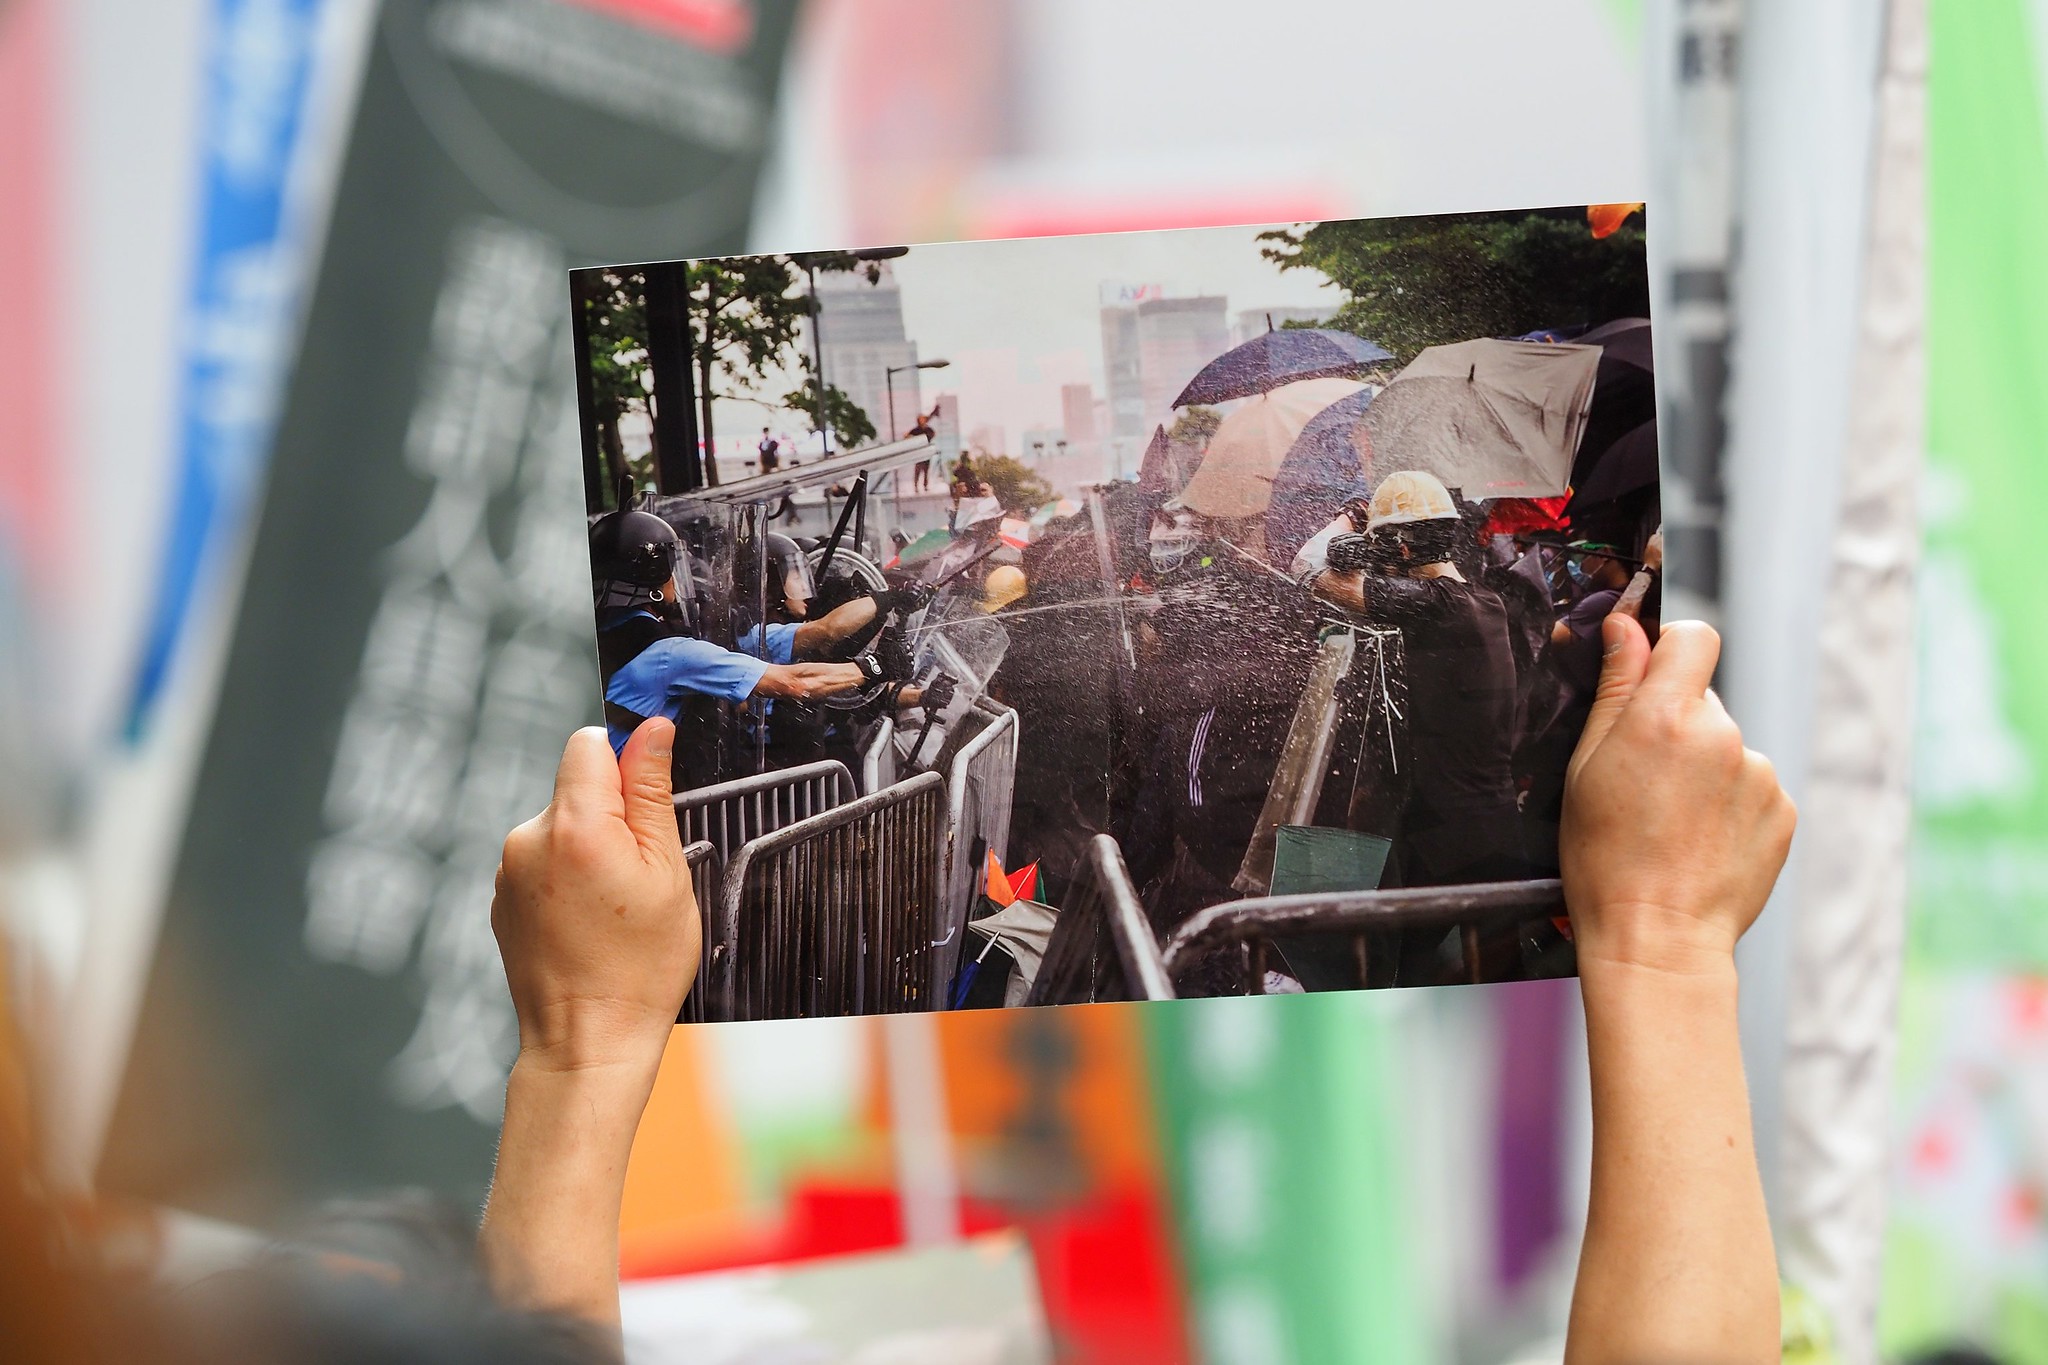 Митинг против закона об экстрадиции, Гонконг, 16 июня 2019 года / Фото:<a href="https://www.flickr.com/photos/etanliam/48145572166/" target="_blank">Etan Liam</a>, CC BY-ND 2.0